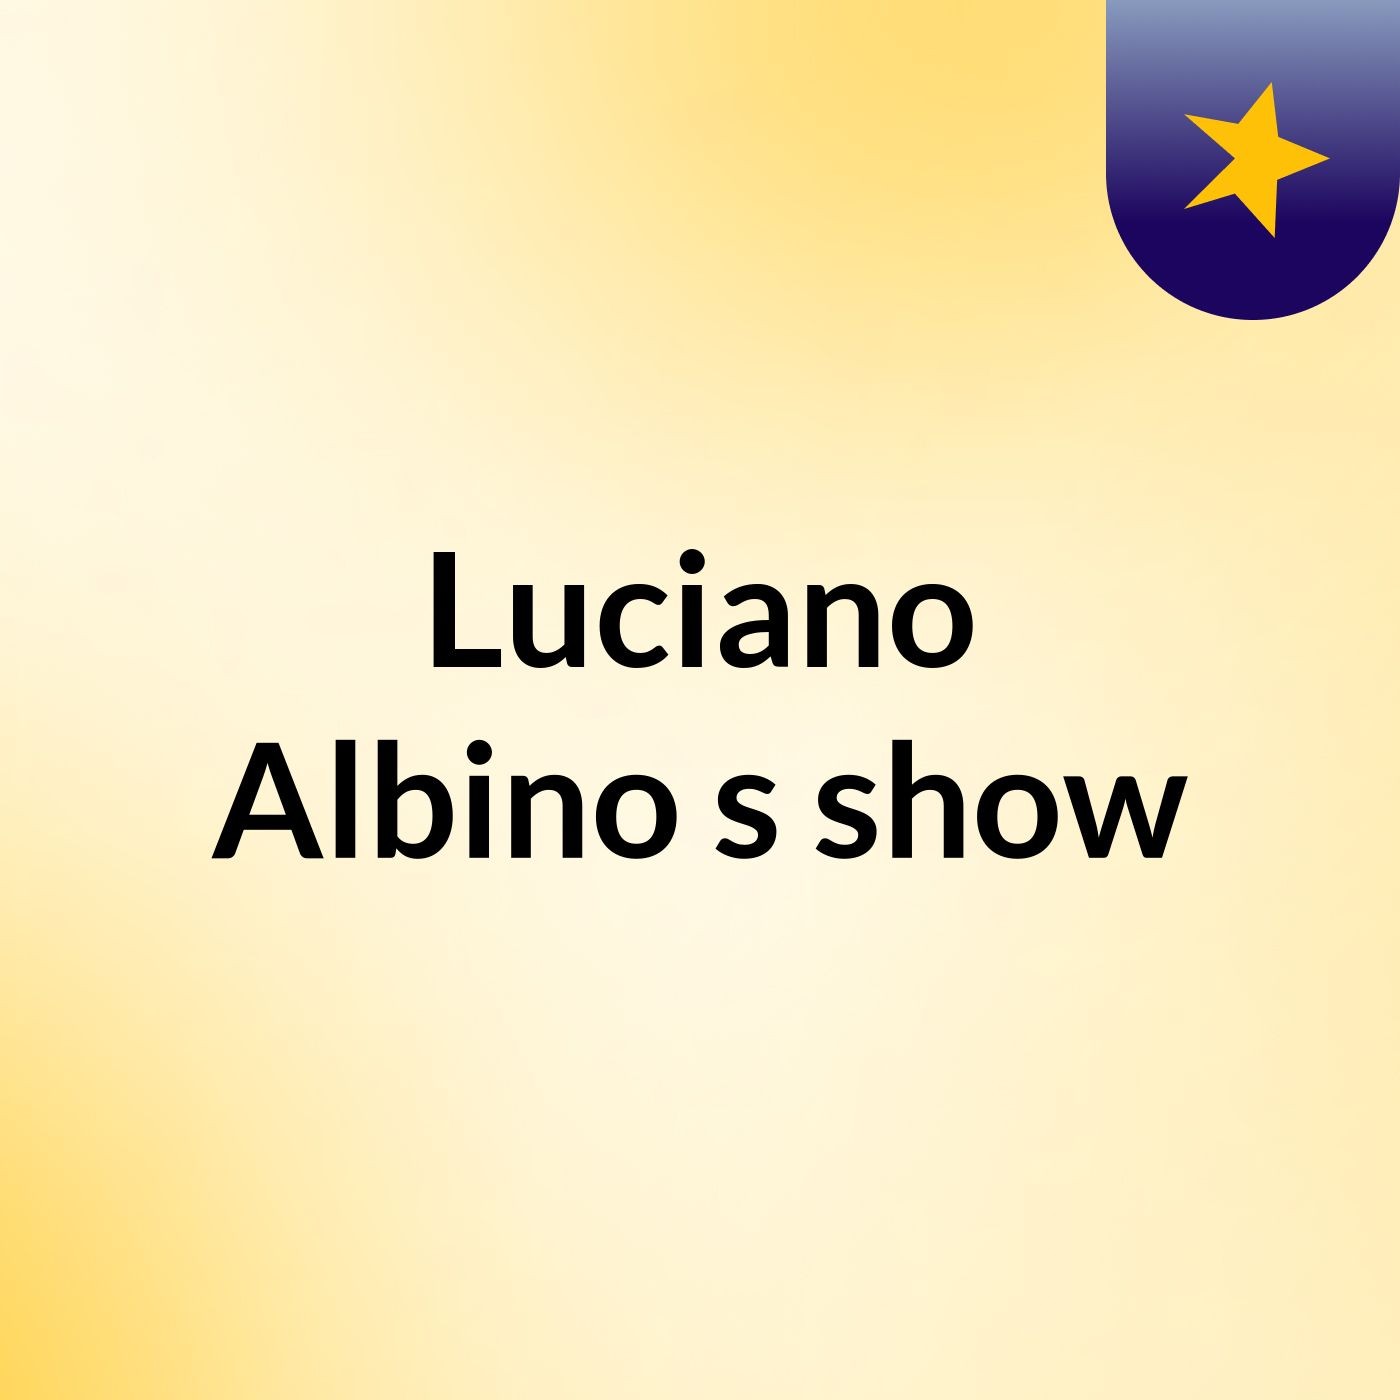 Luciano Albino's show